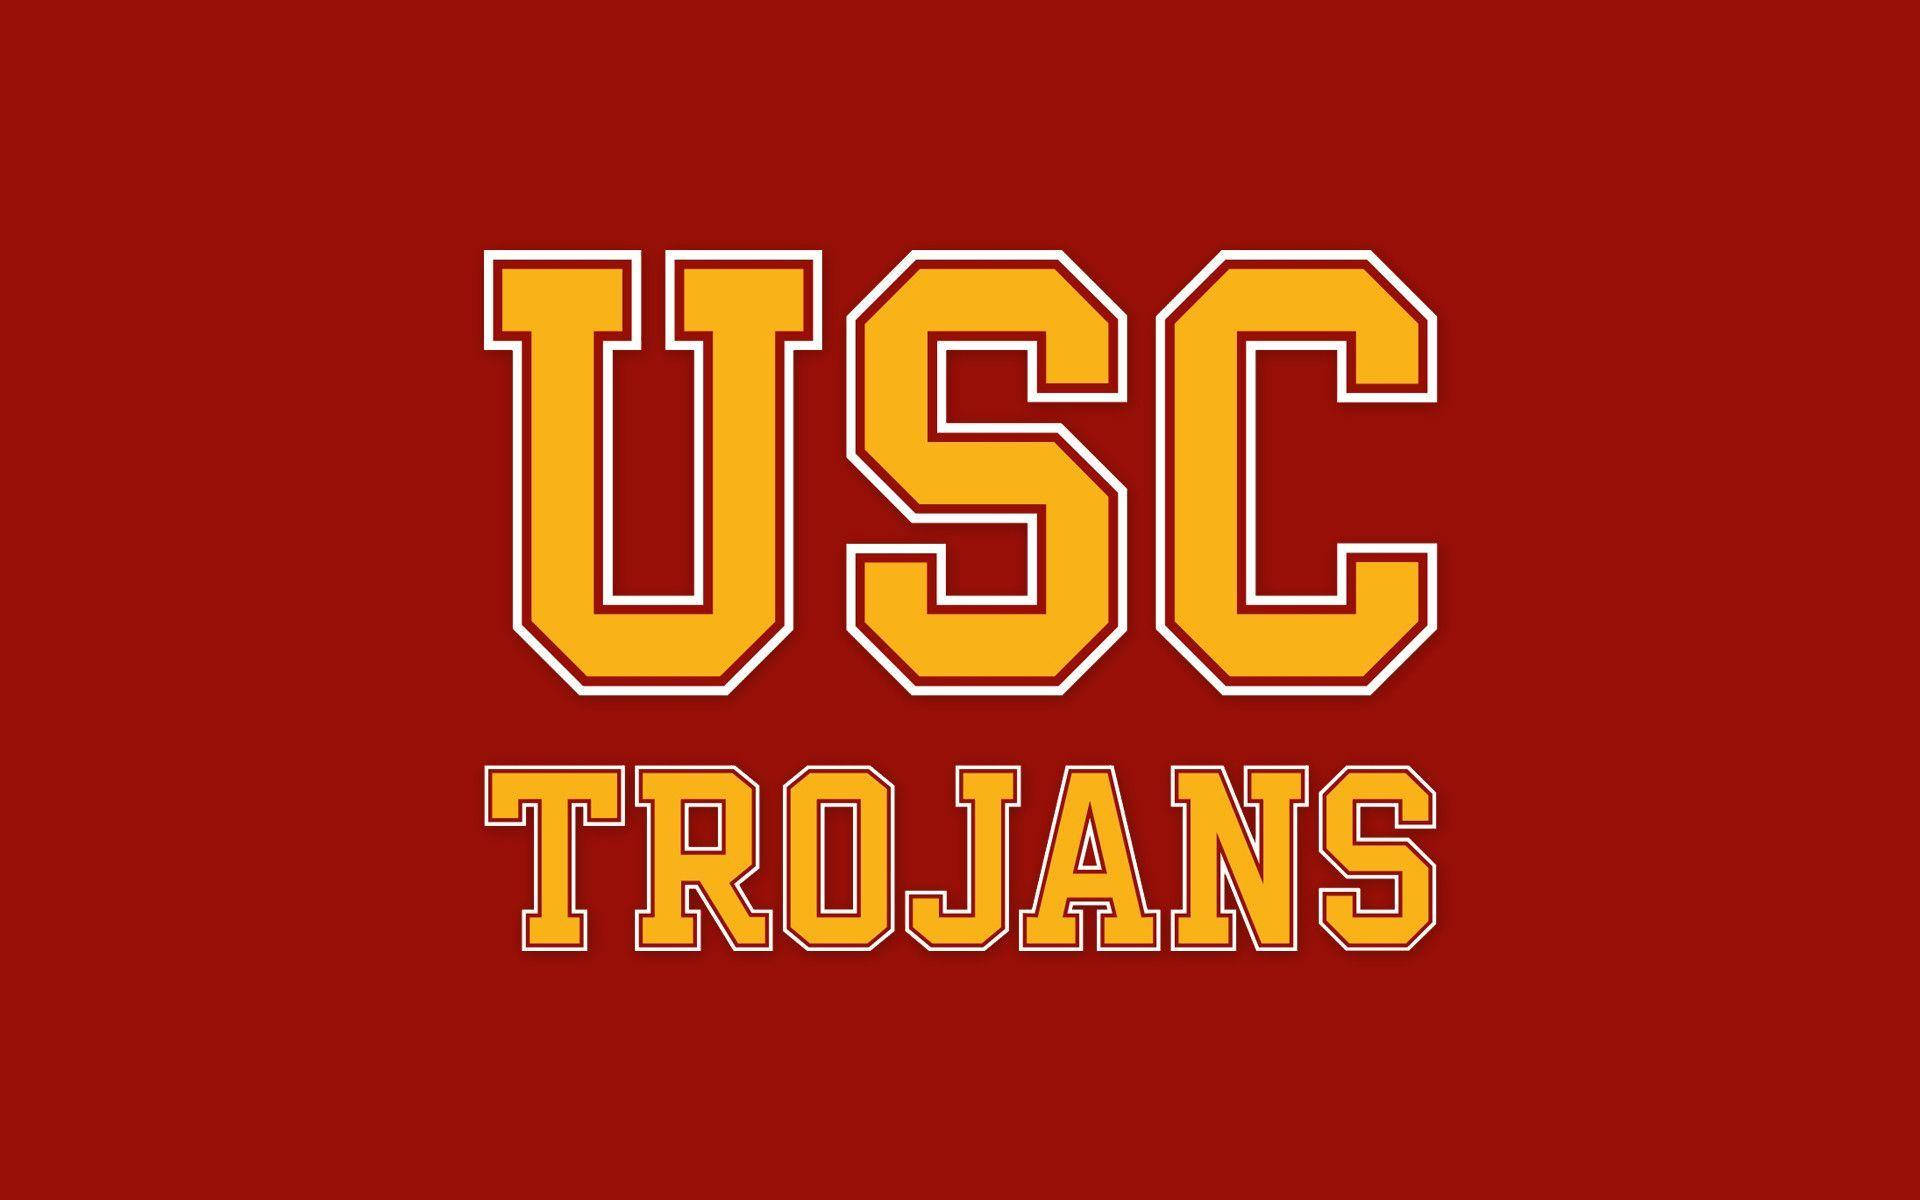 Fondode Pantalla Para Escritorio Con El Logotipo De Los Trojans De La Universidad De Southern California. Fondo de pantalla